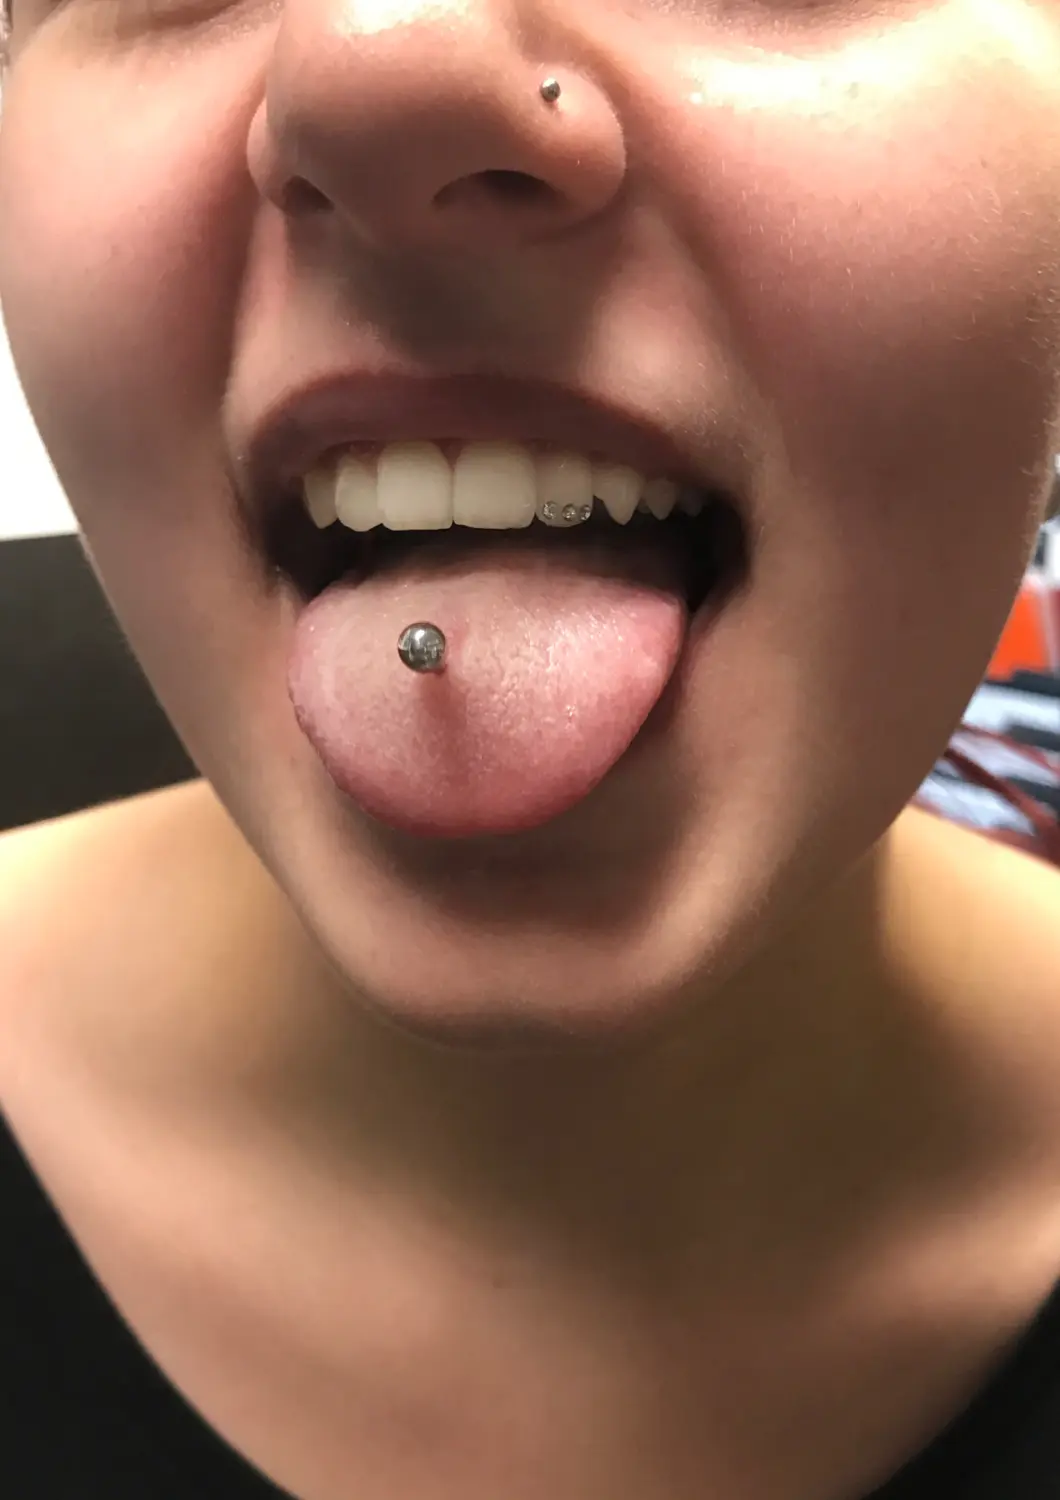 Skin City Tattoo & Piercing auf der Zunge